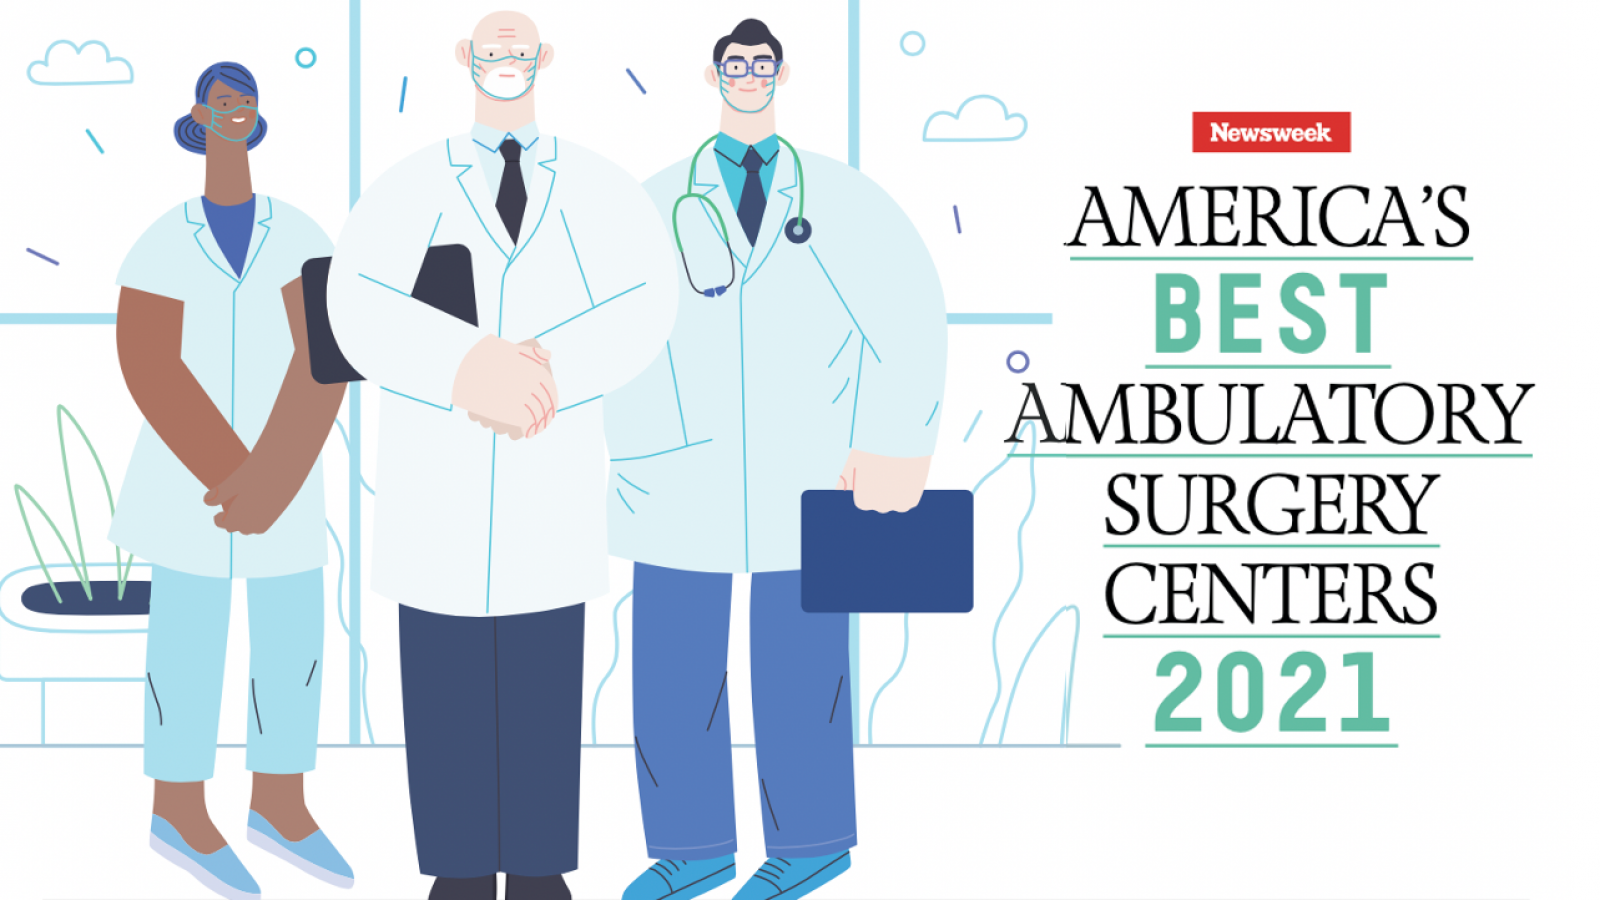 Americas Best Ambulatory Surgery Centers 2021